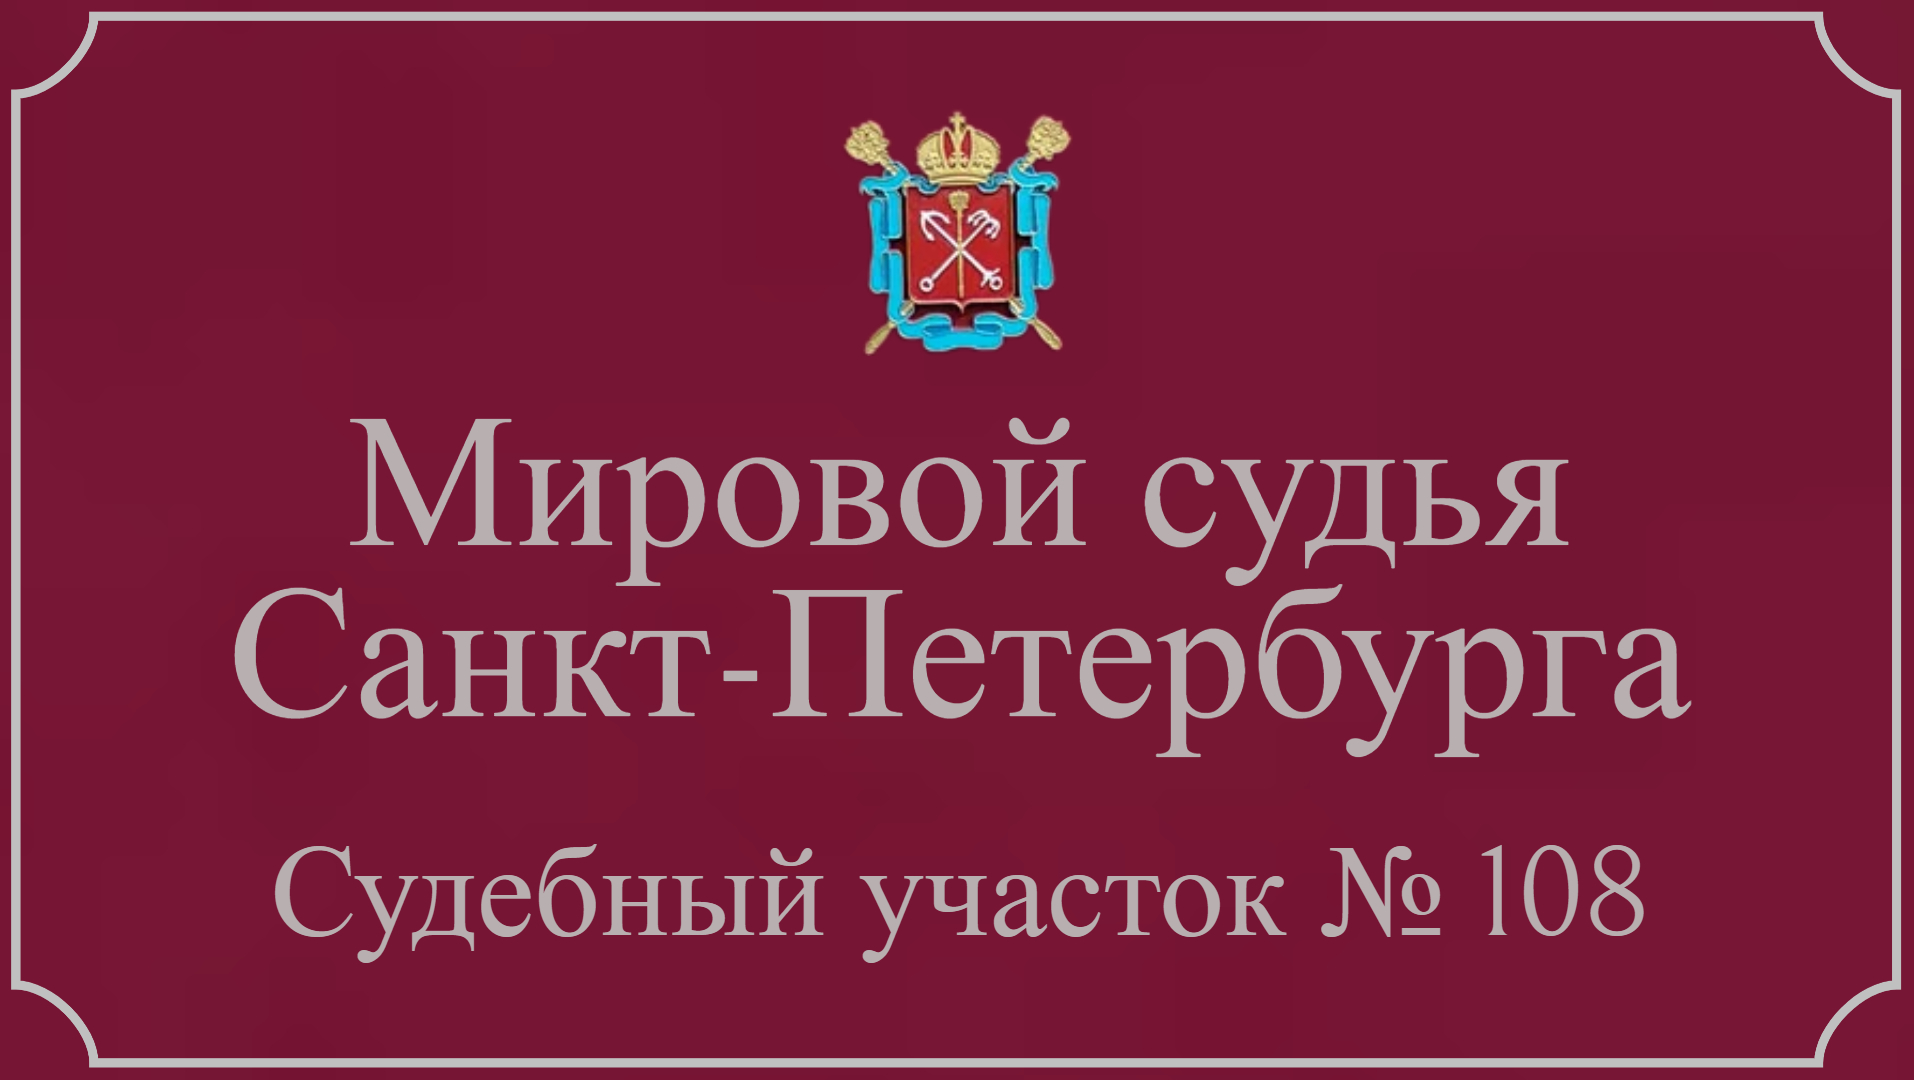 Информация по 108 судебному участку в Санкт-Петербурге.